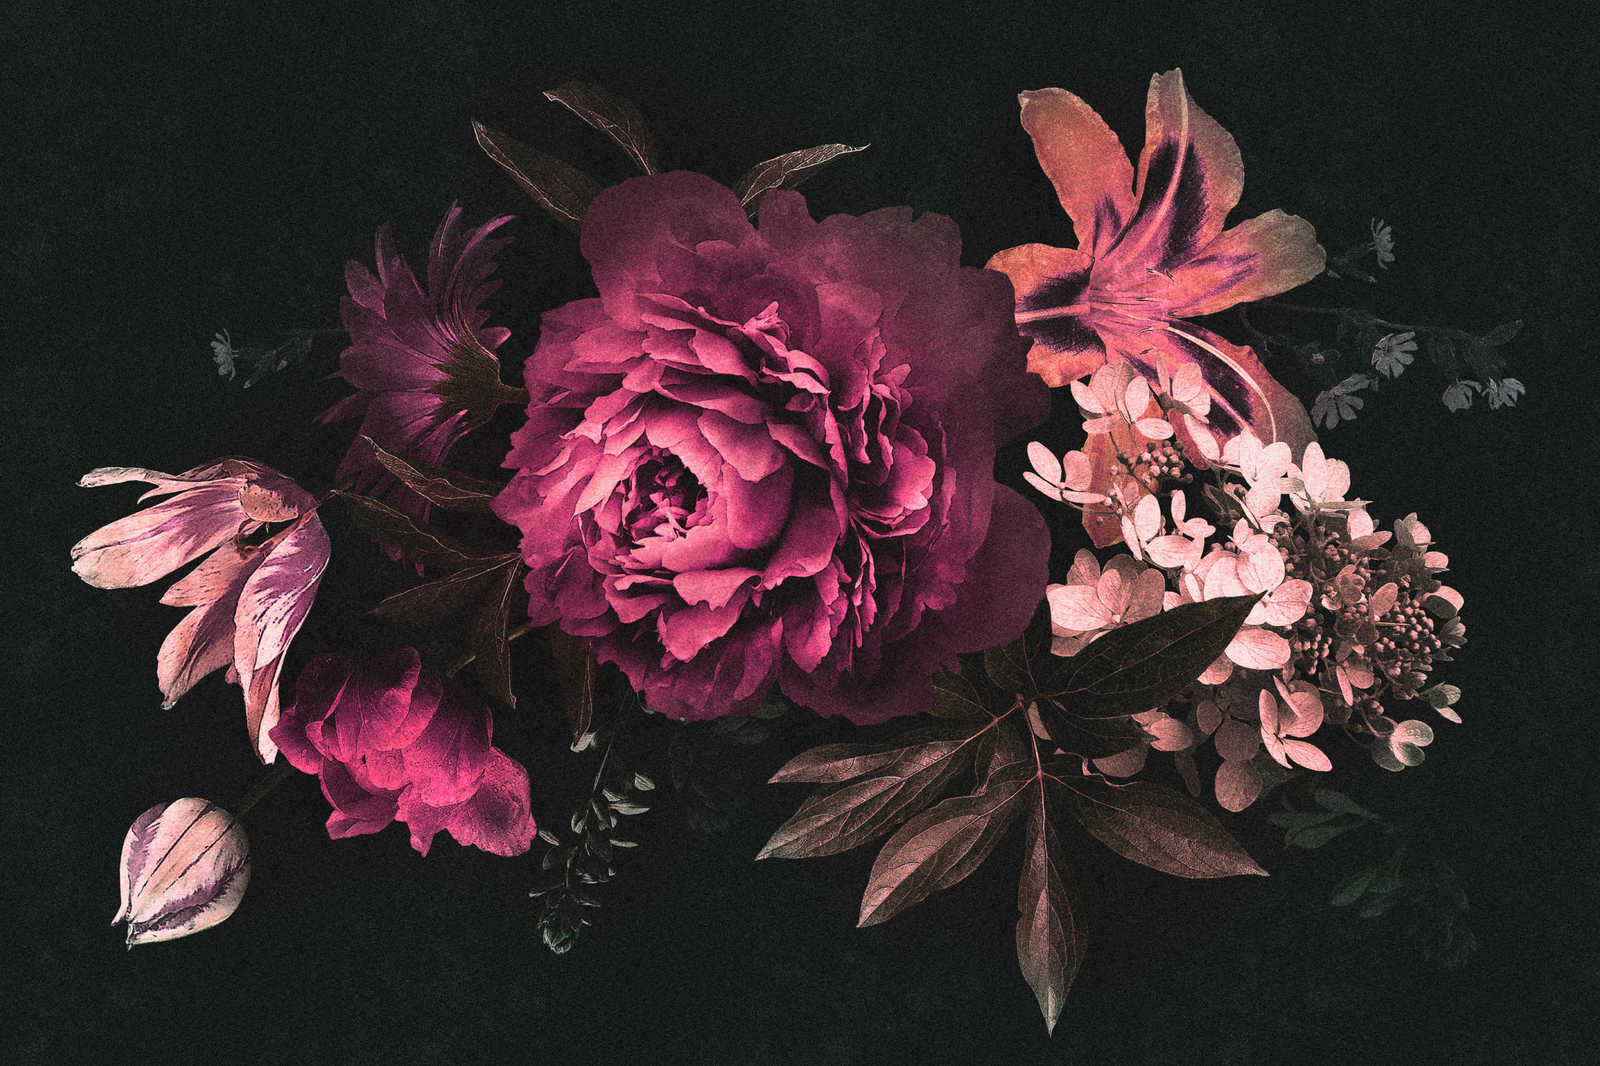             Drama queen 3 - Quadro su tela con bouquet di fiori romantico - Natura qualita consistenza in cartone - 0,90 m x 0,60 m
        